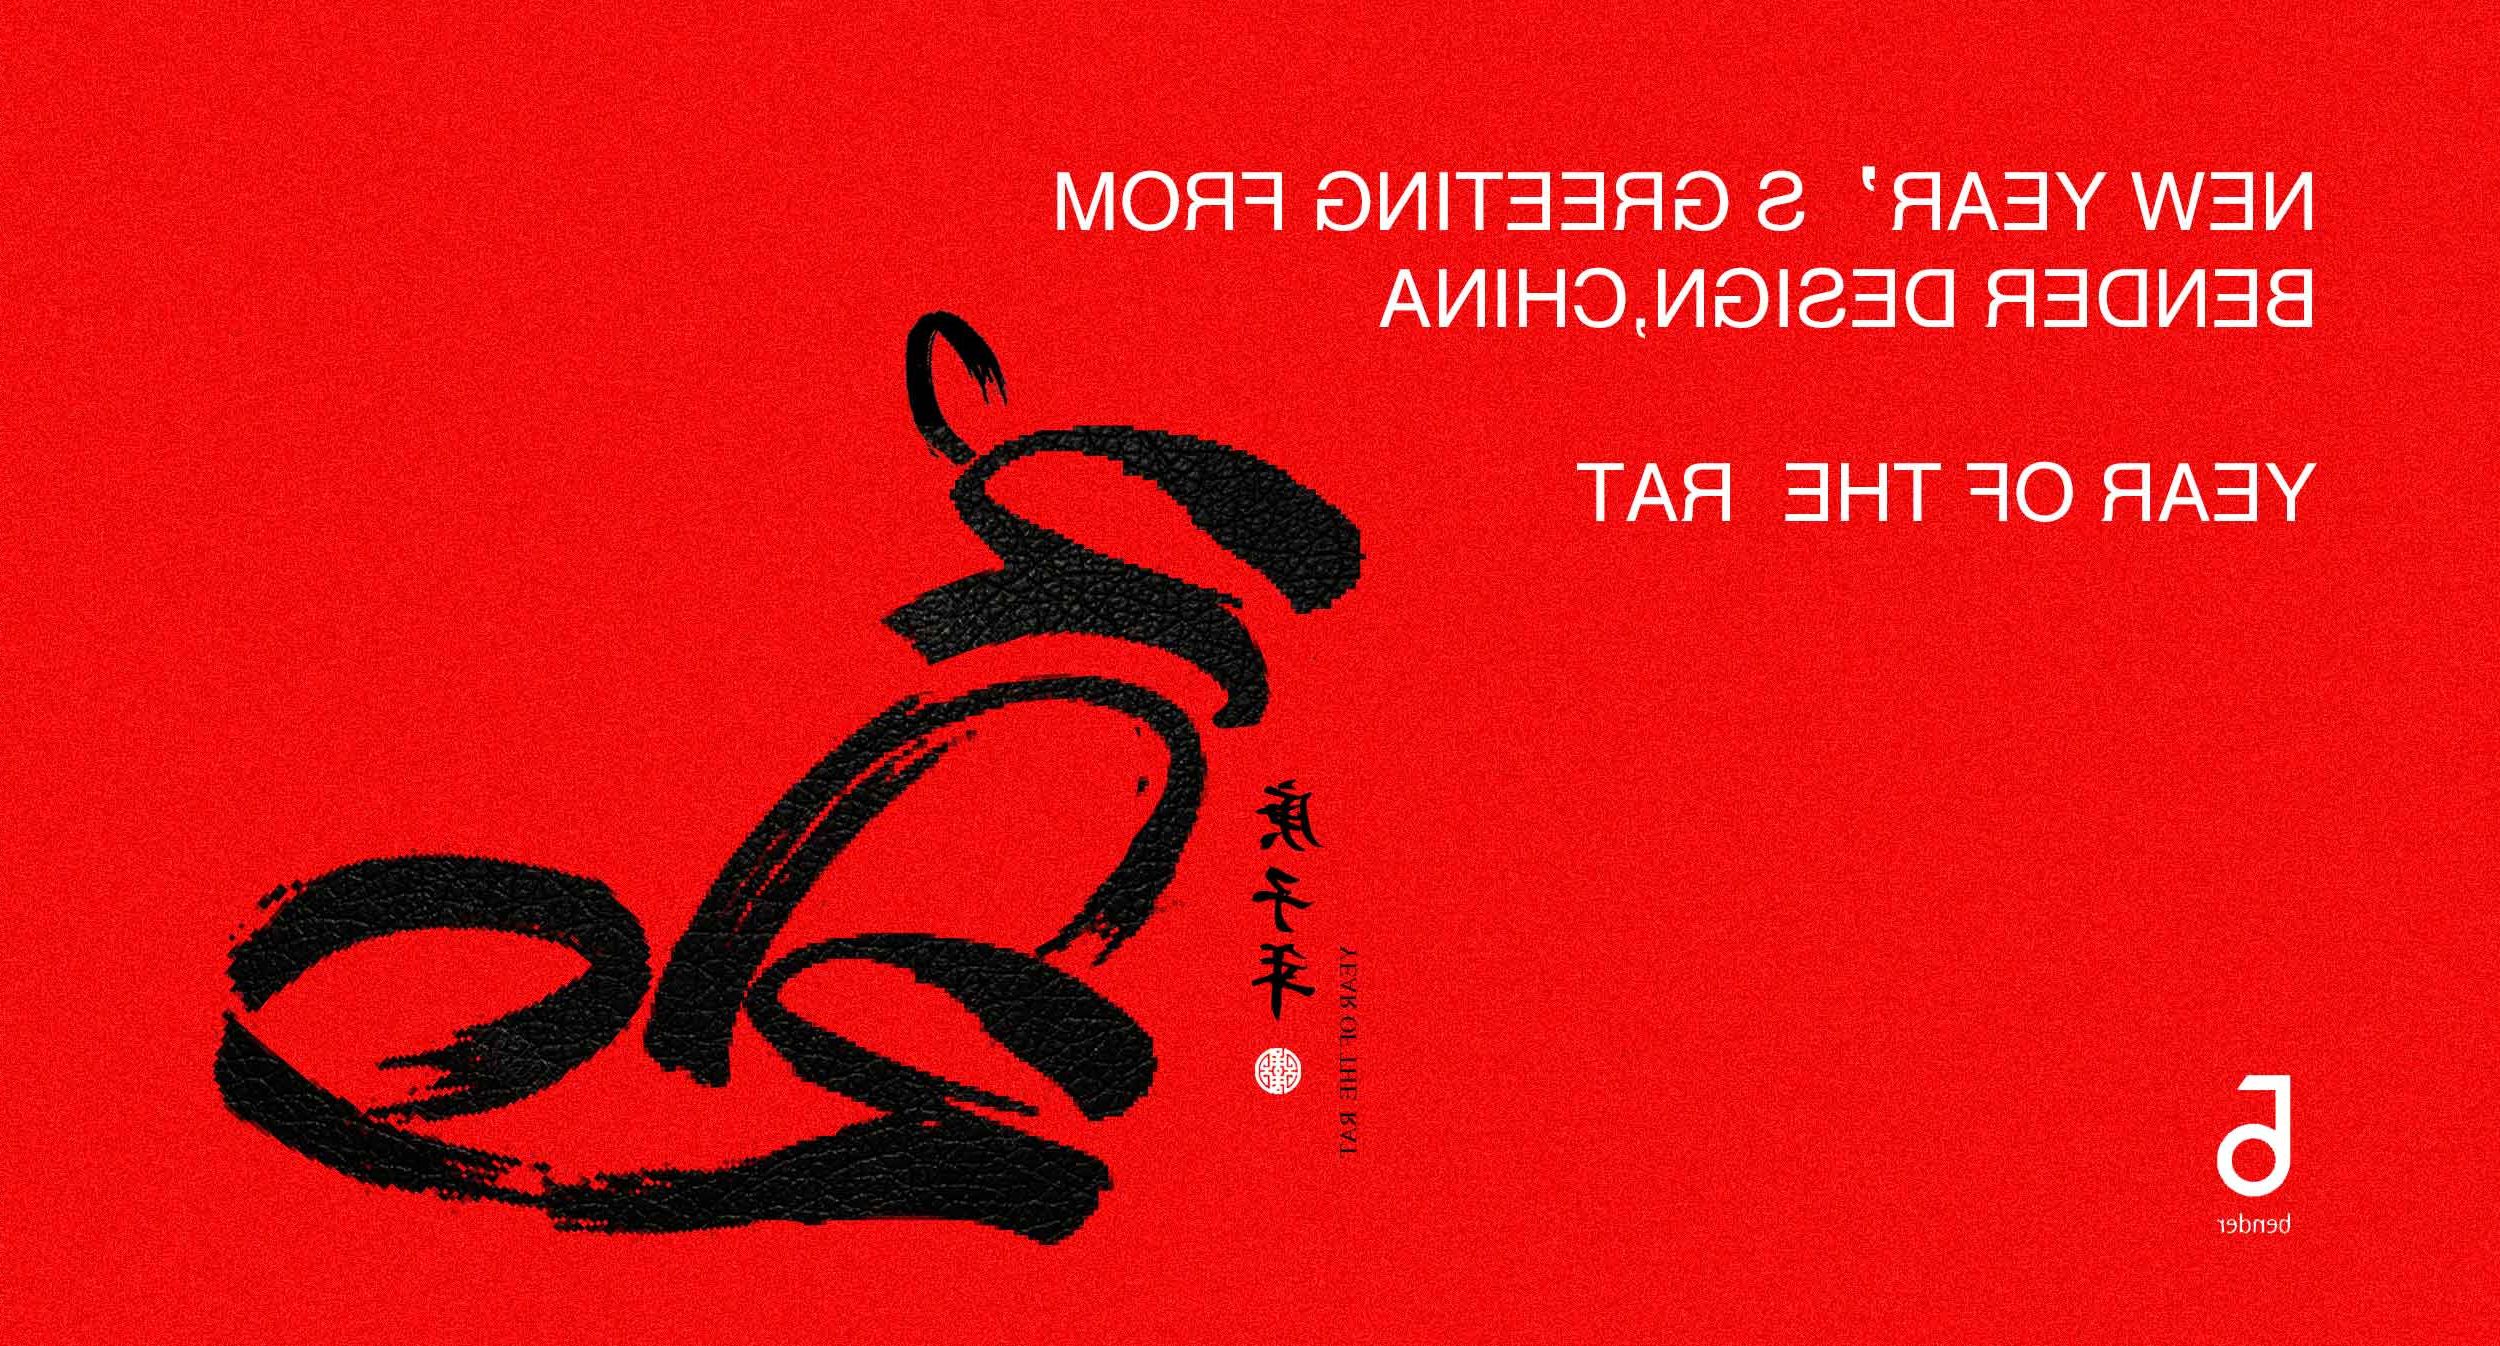 Kok（中国）体验官网
设计：2019年春节祝福与放假通知